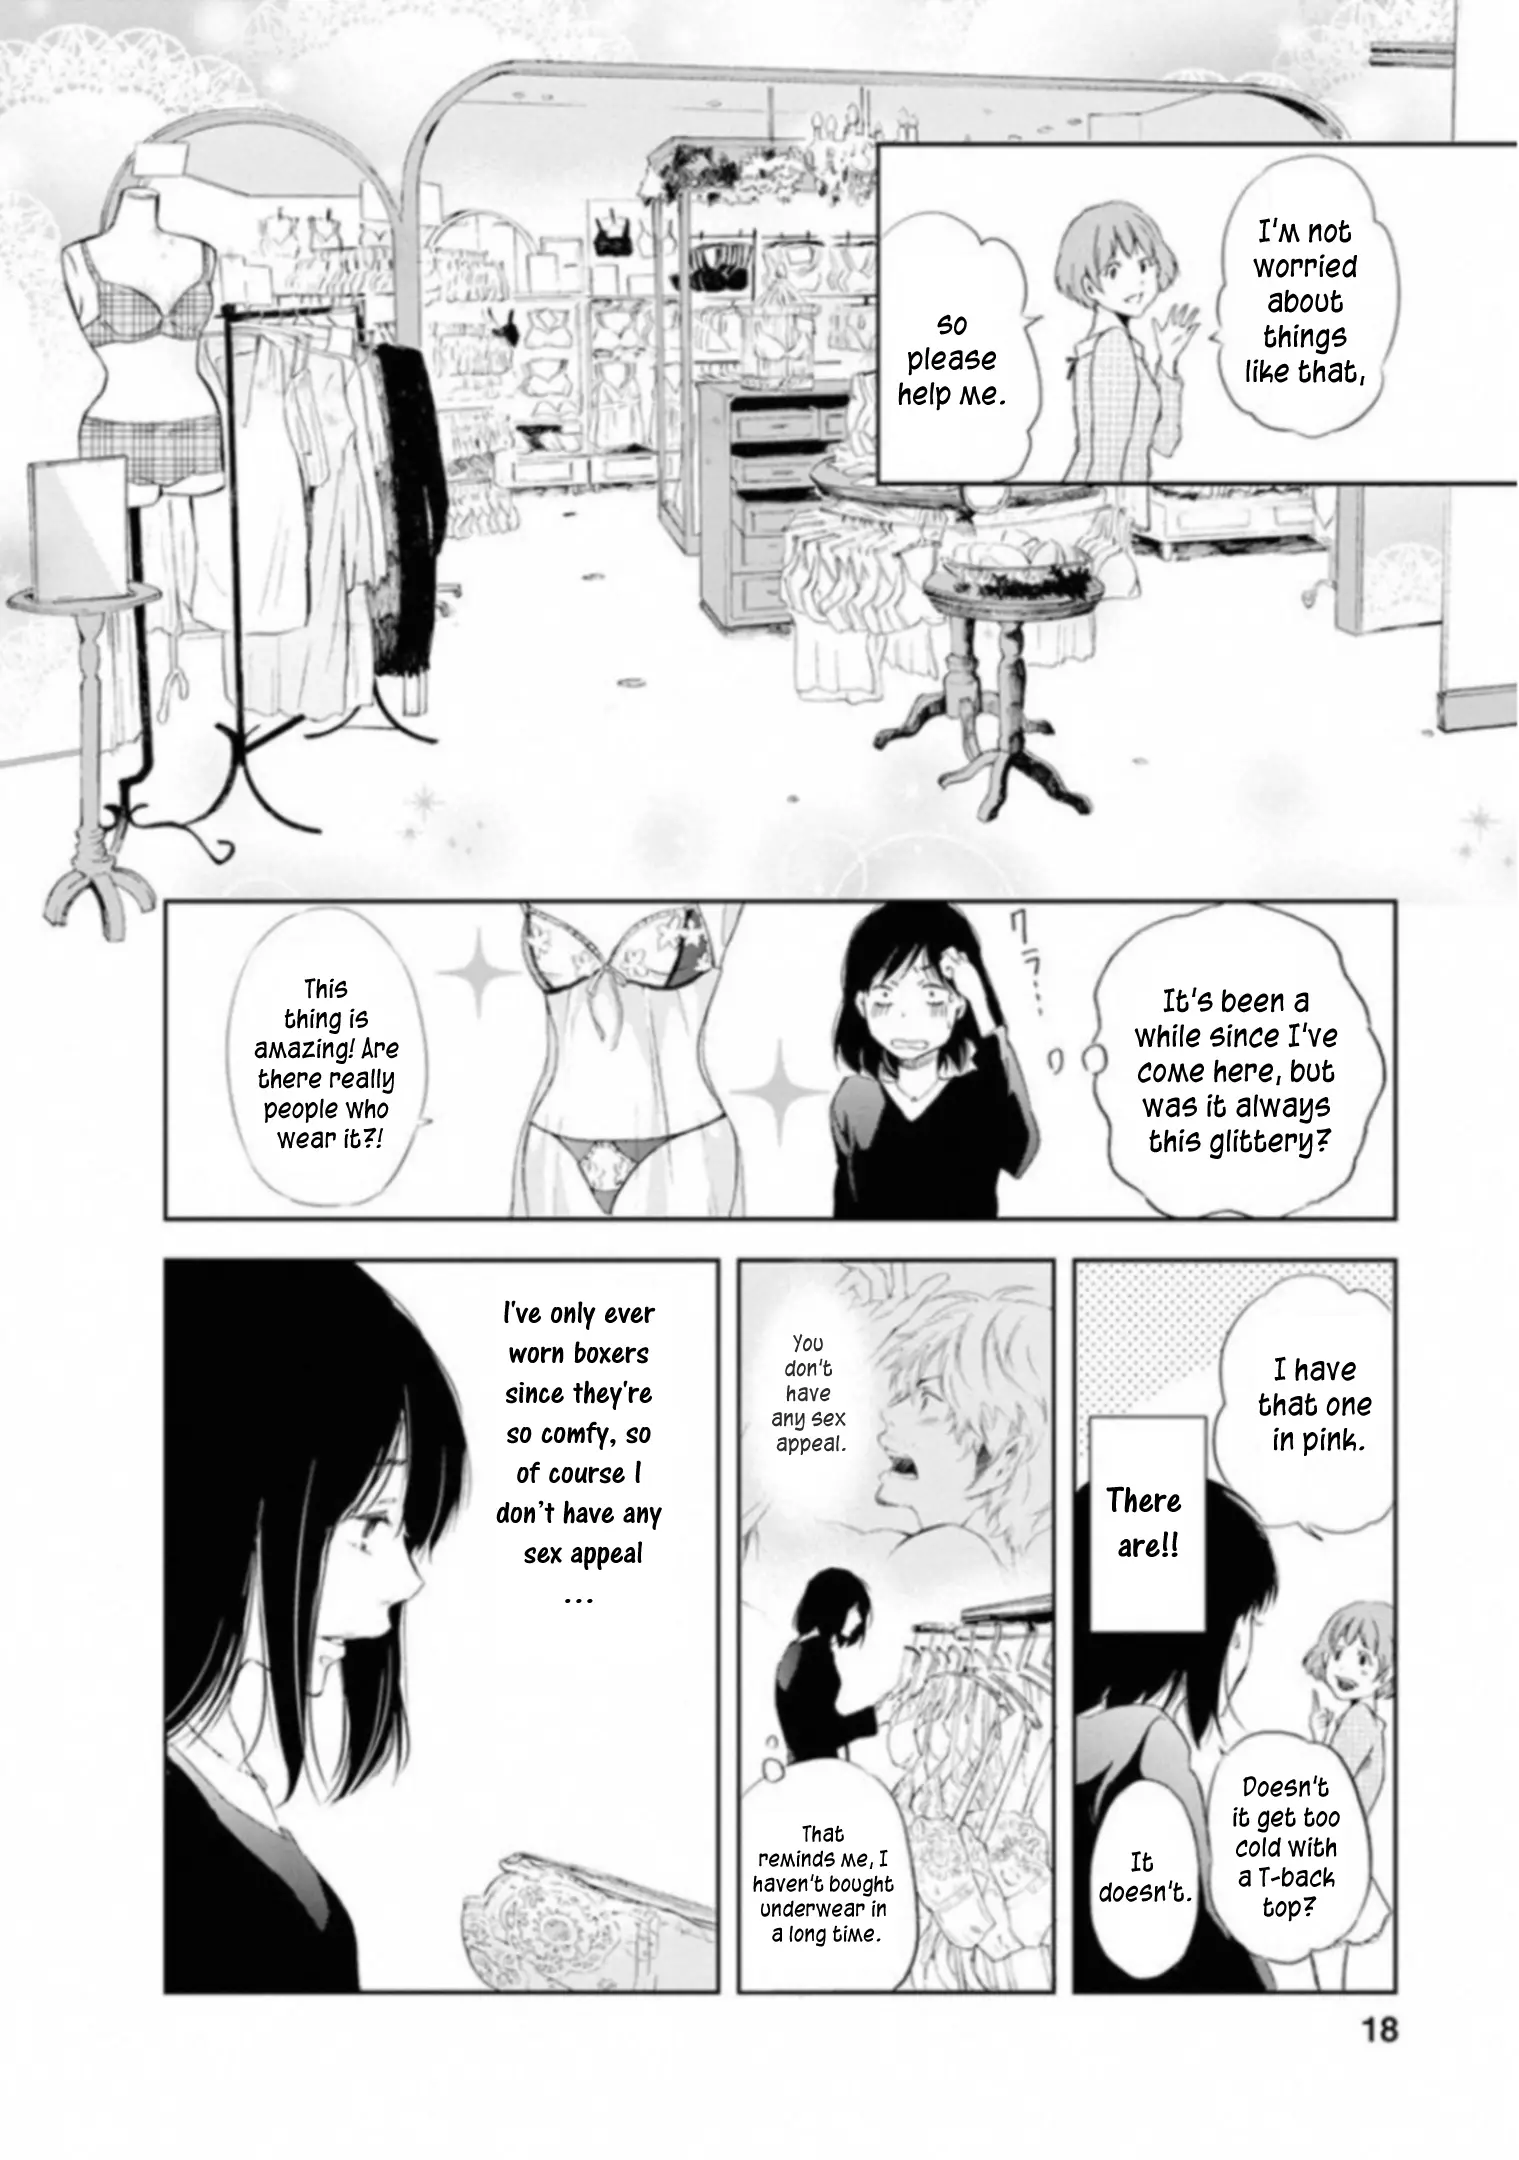 Anata Ga Shitekurenakute Mo - 1 page 16